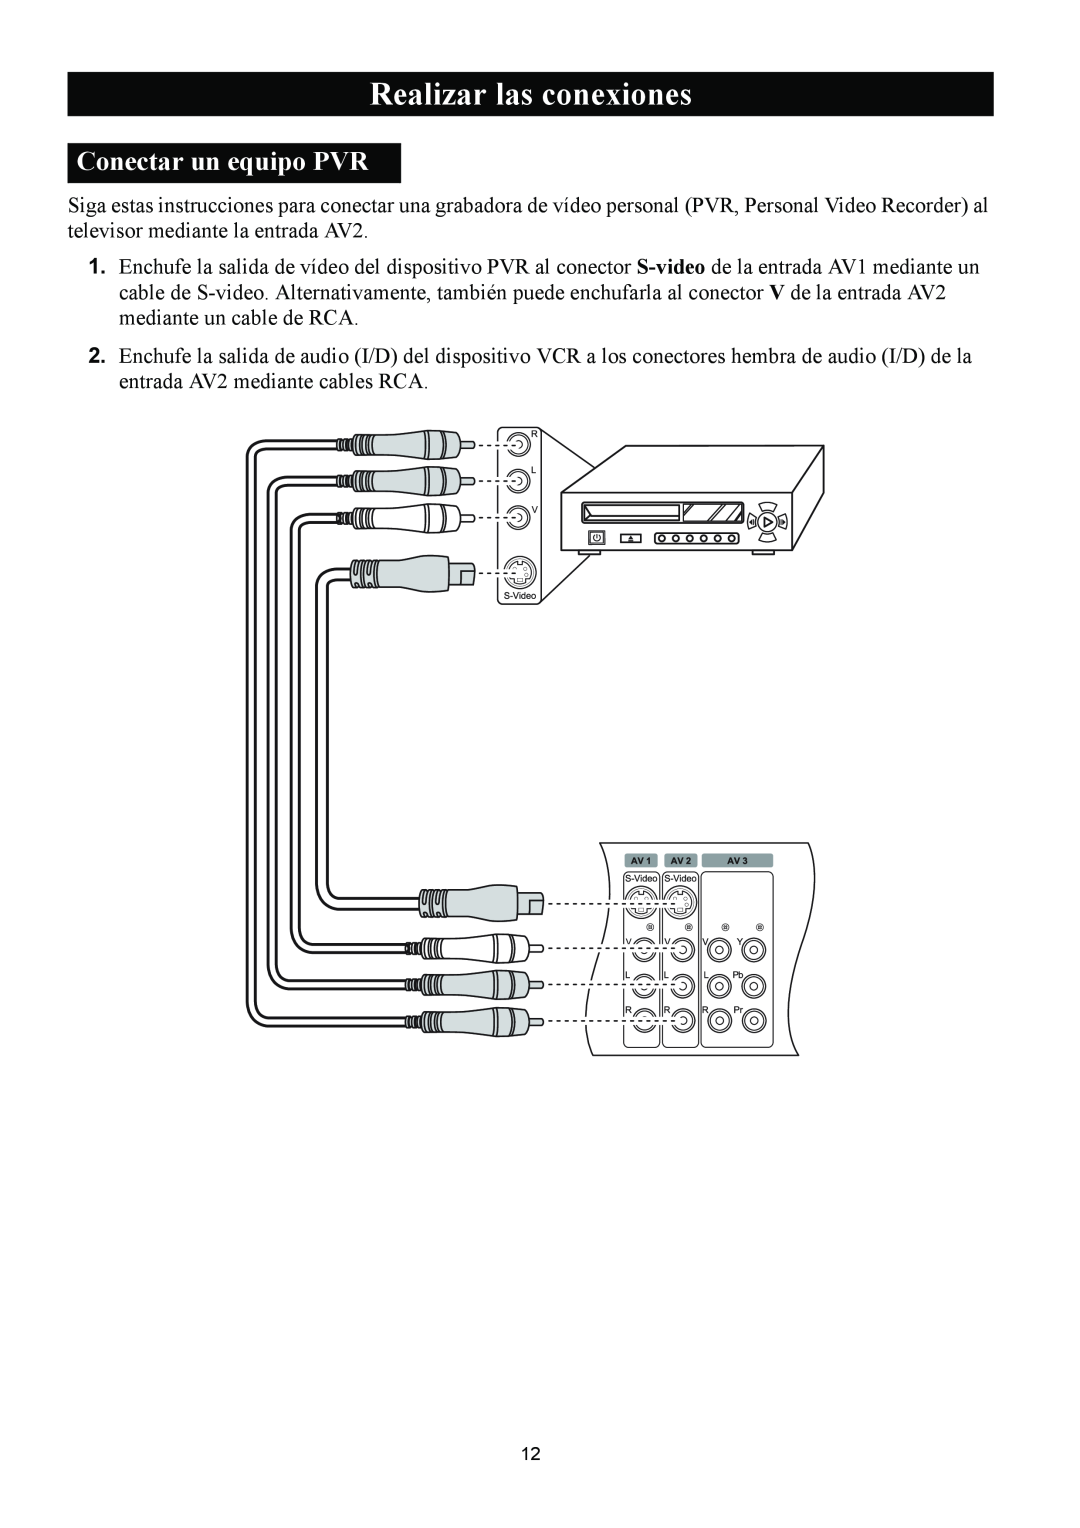 Magnavox 50ML8105D/17 owner manual Conectar un equipo PVR, Realizar las conexiones 